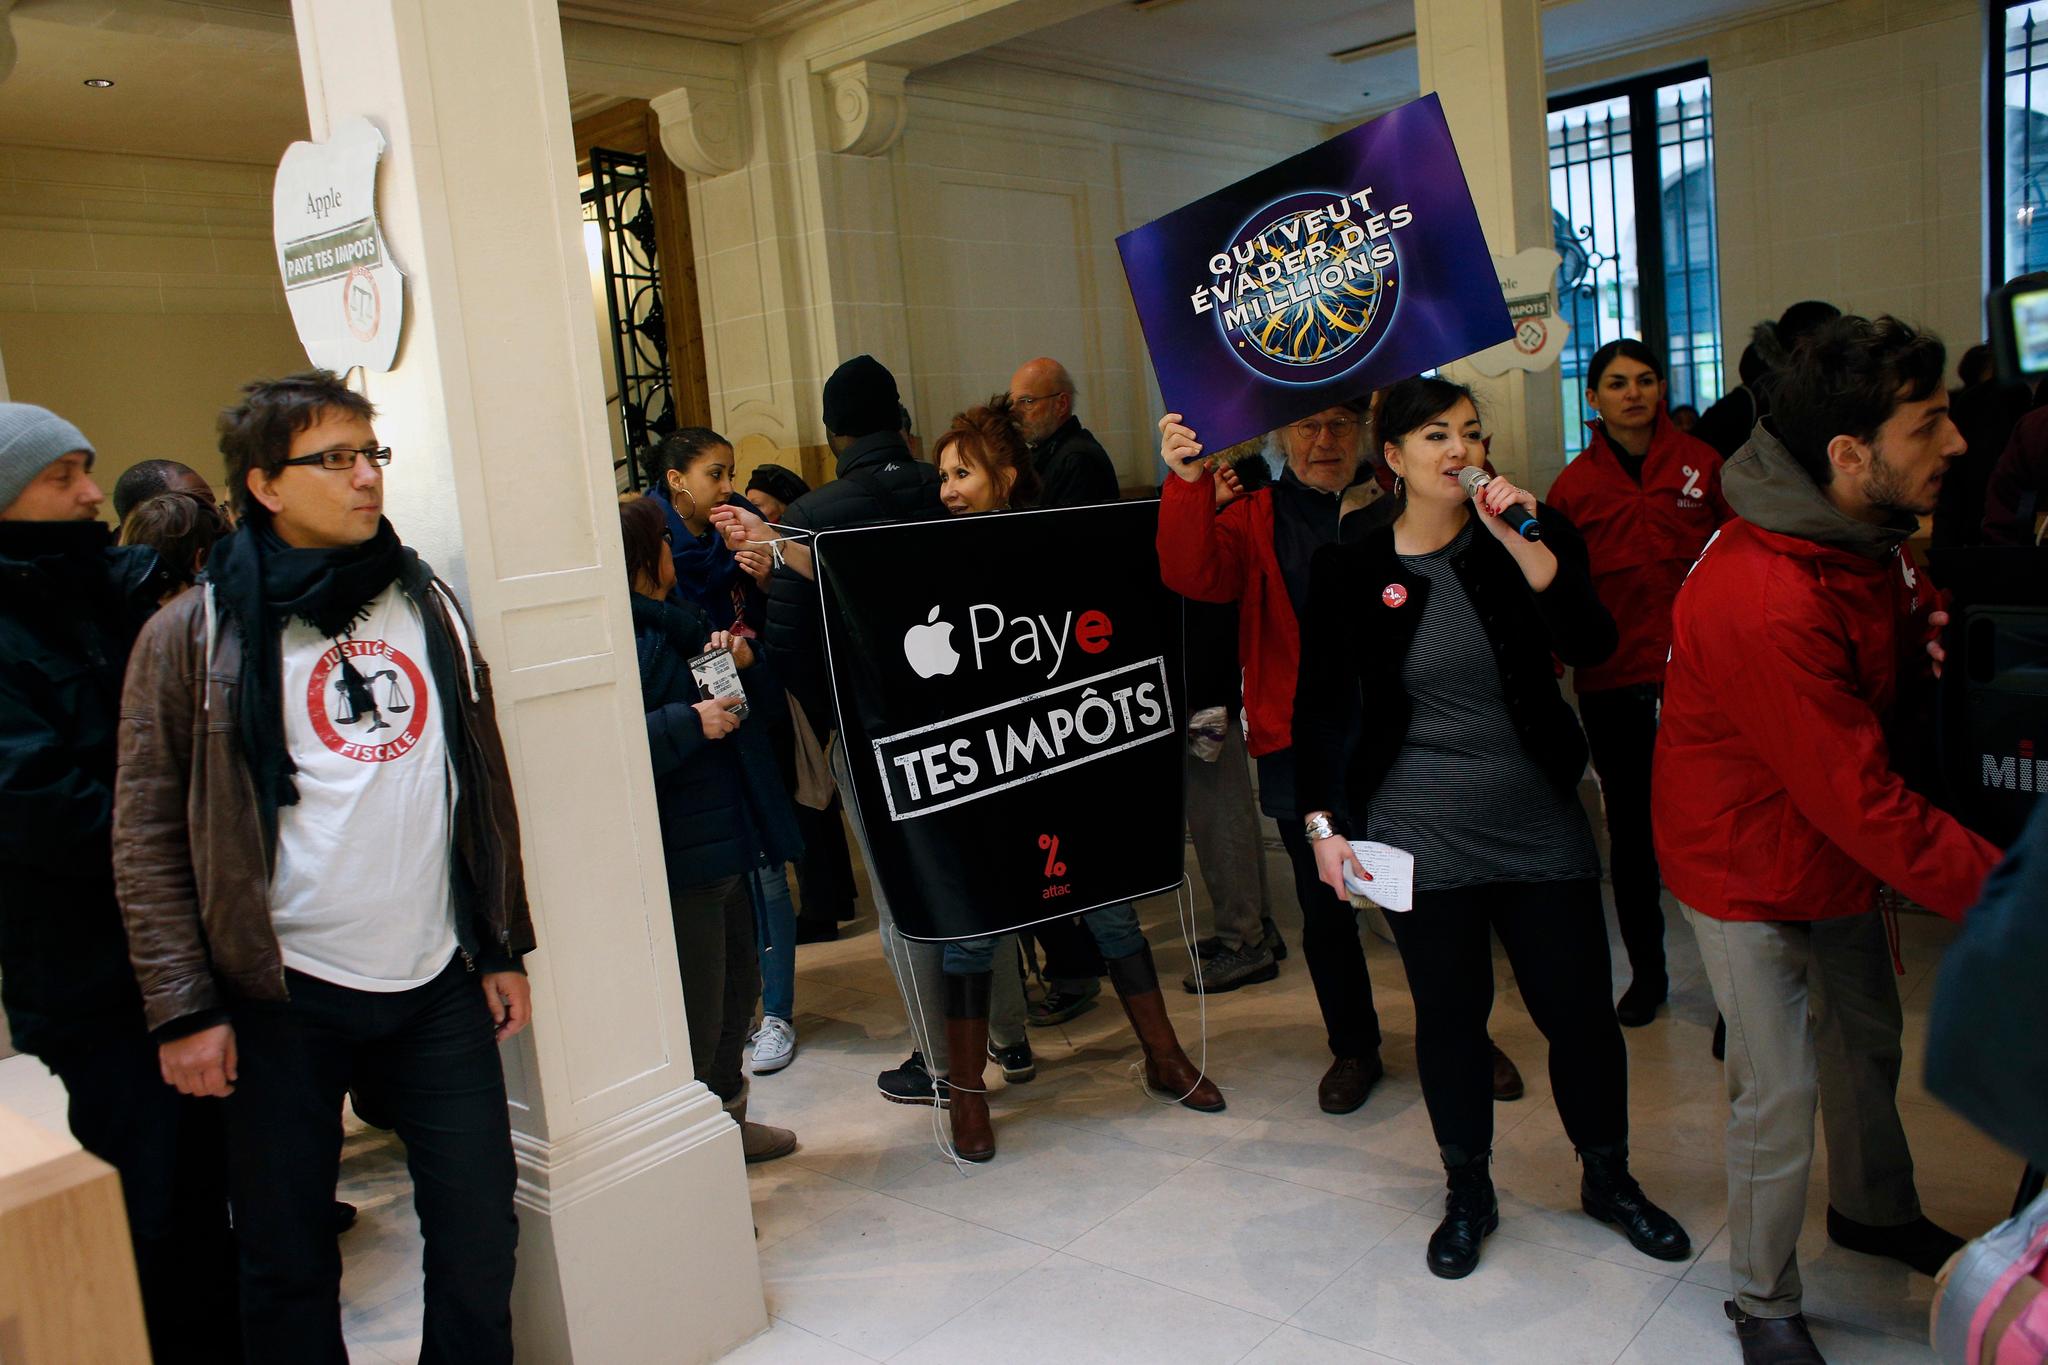  Aktivister fra organisasjonen Attac protesterte i en Apple-butikk i Paris da Apple nektet å betale skattekravet fra EU. Bildet er tatt i desember 2017.